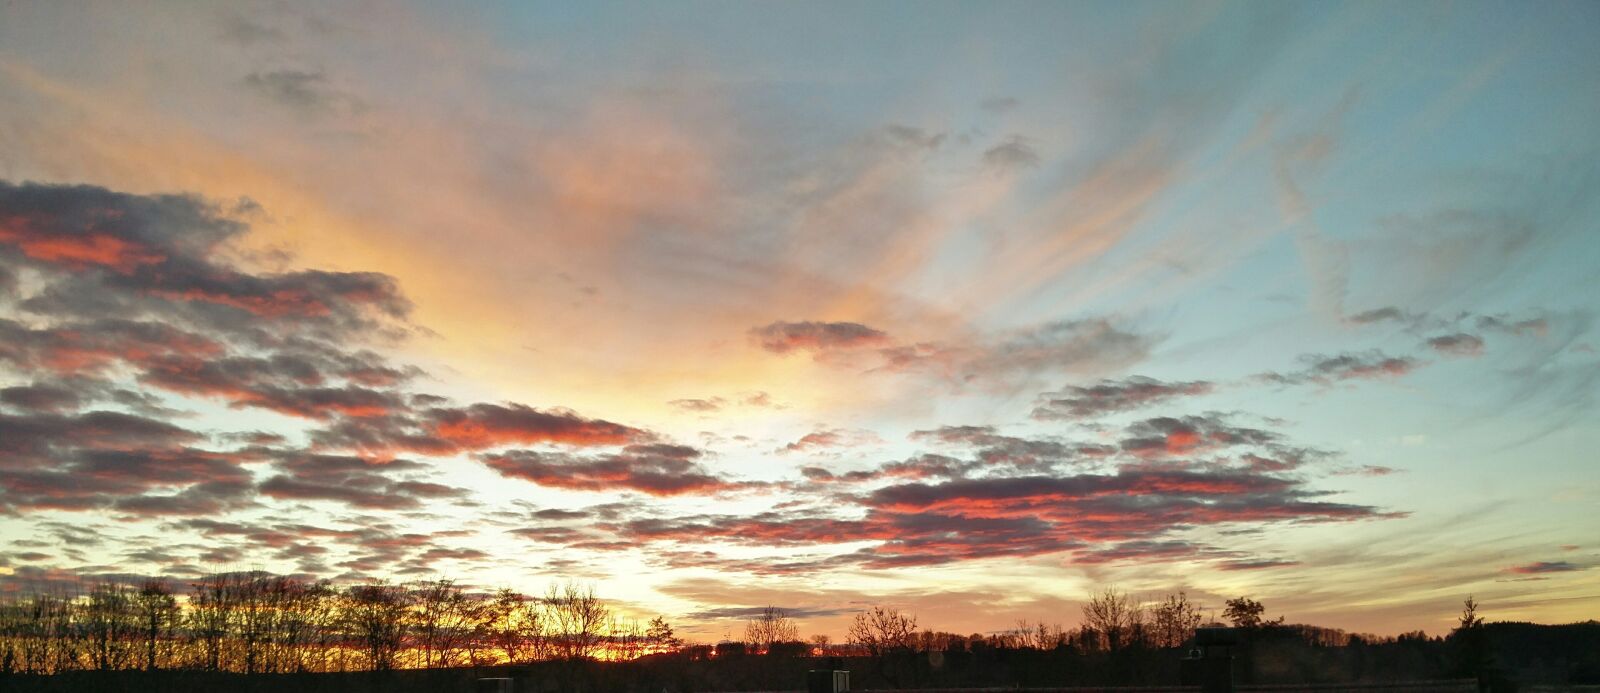 OnePlus 2 sample photo. Sunset, abendstimmung, background image photography